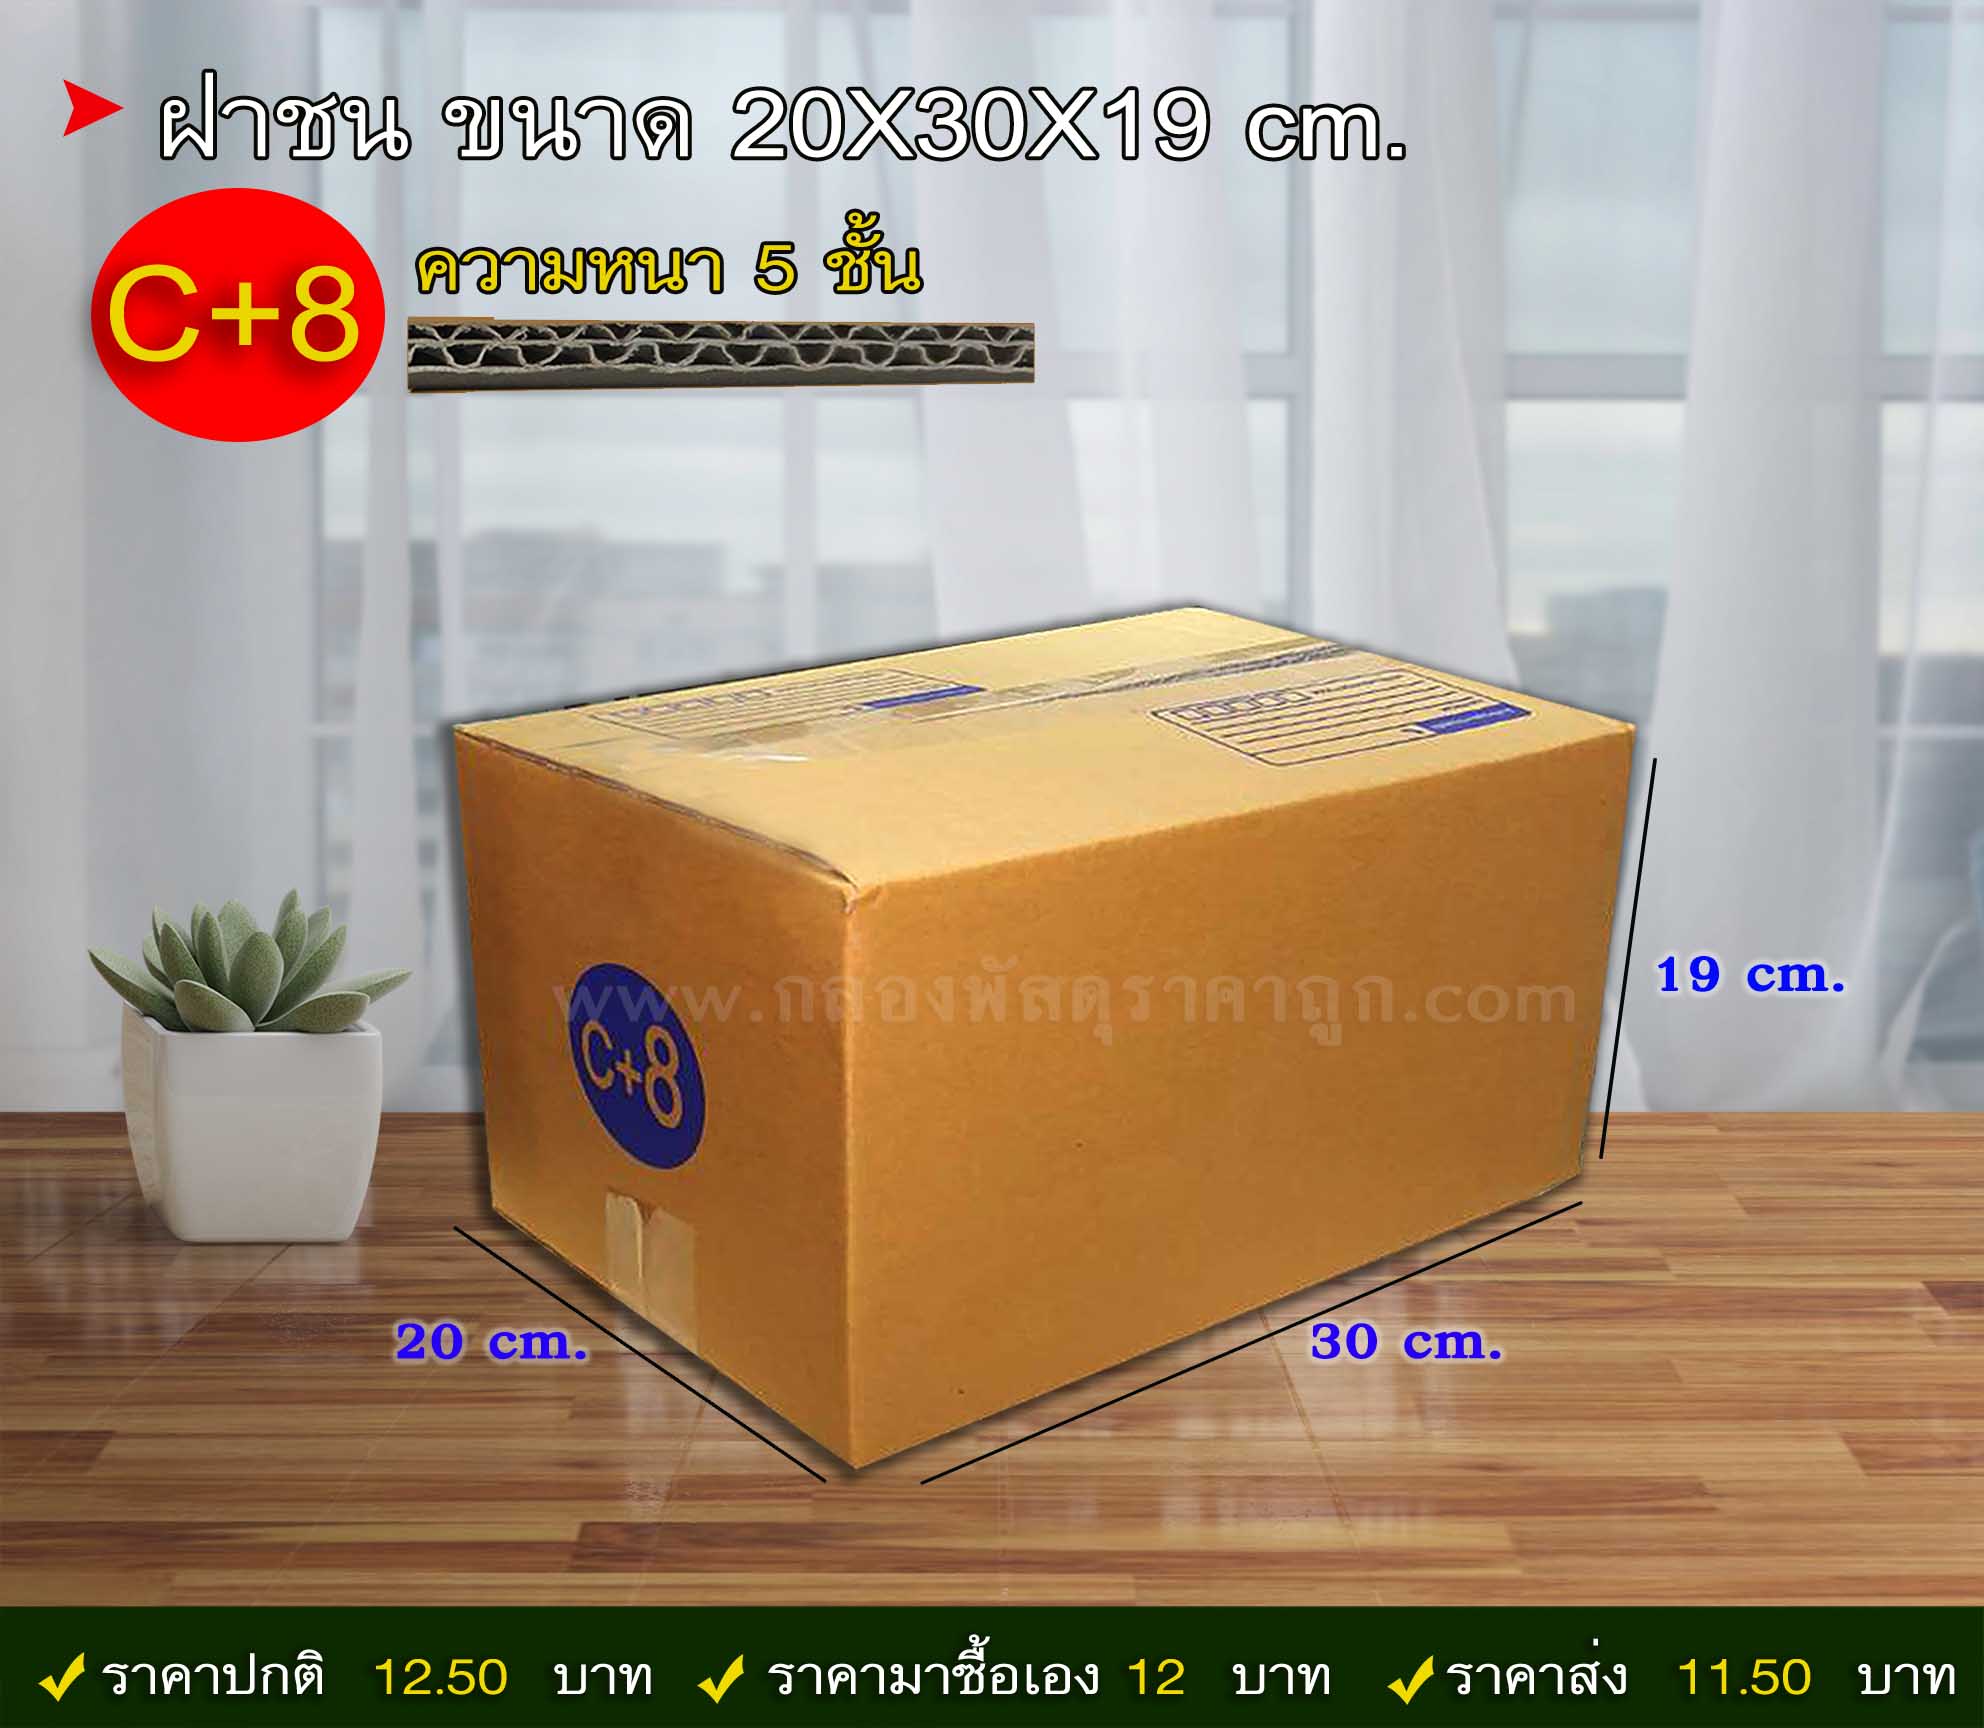 กล่องพัสดุ ฝาชน เบอร์ C+8 ขนาด 20X30X19 ซม. (5 ชั้น) 